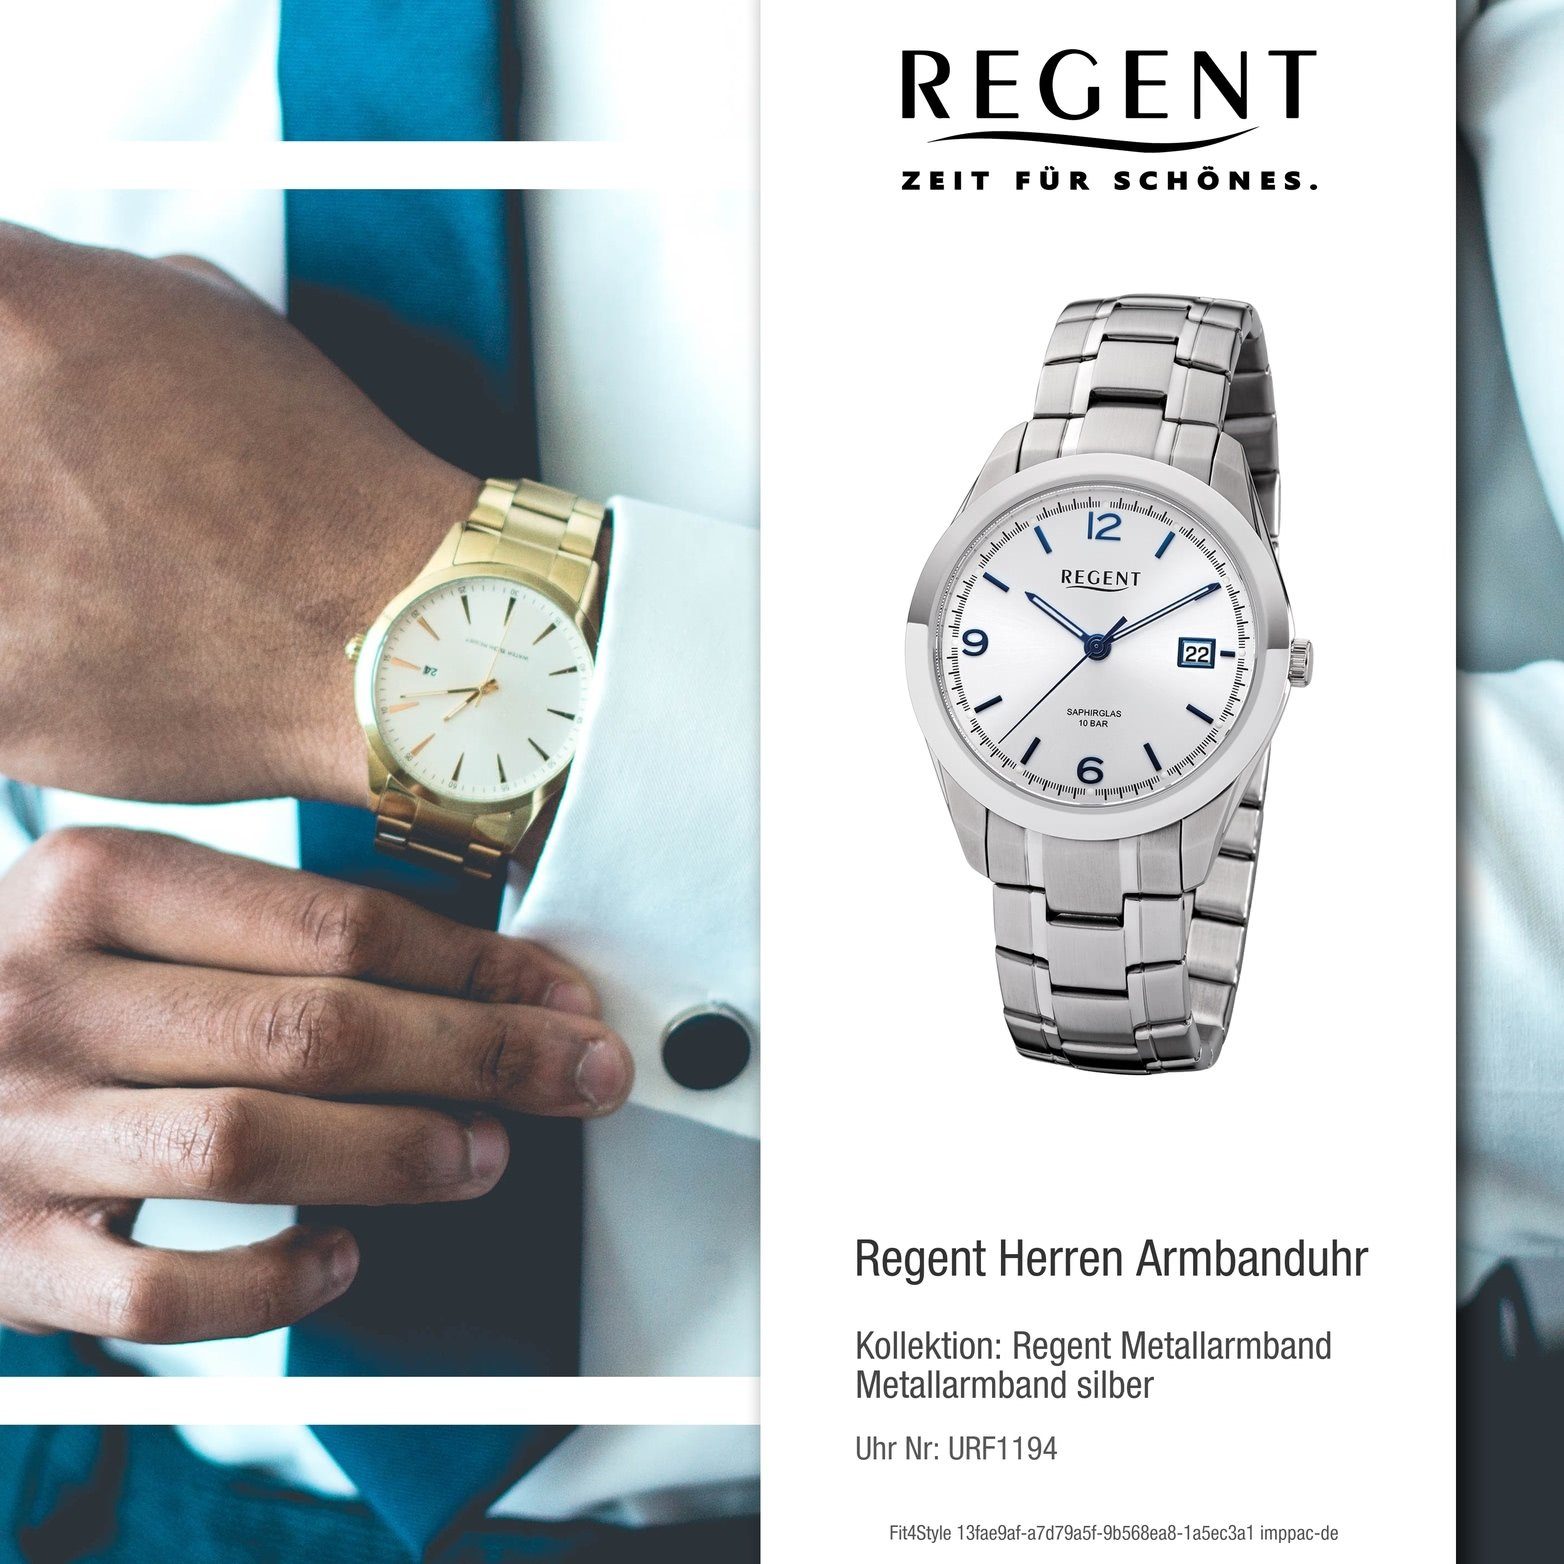 groß Herrenuhr Analog, Metallarmband Regent rundes Gehäuse, silber, F-1194 Quarzuhr 40mm) Uhr Herren Regent (ca. Metall